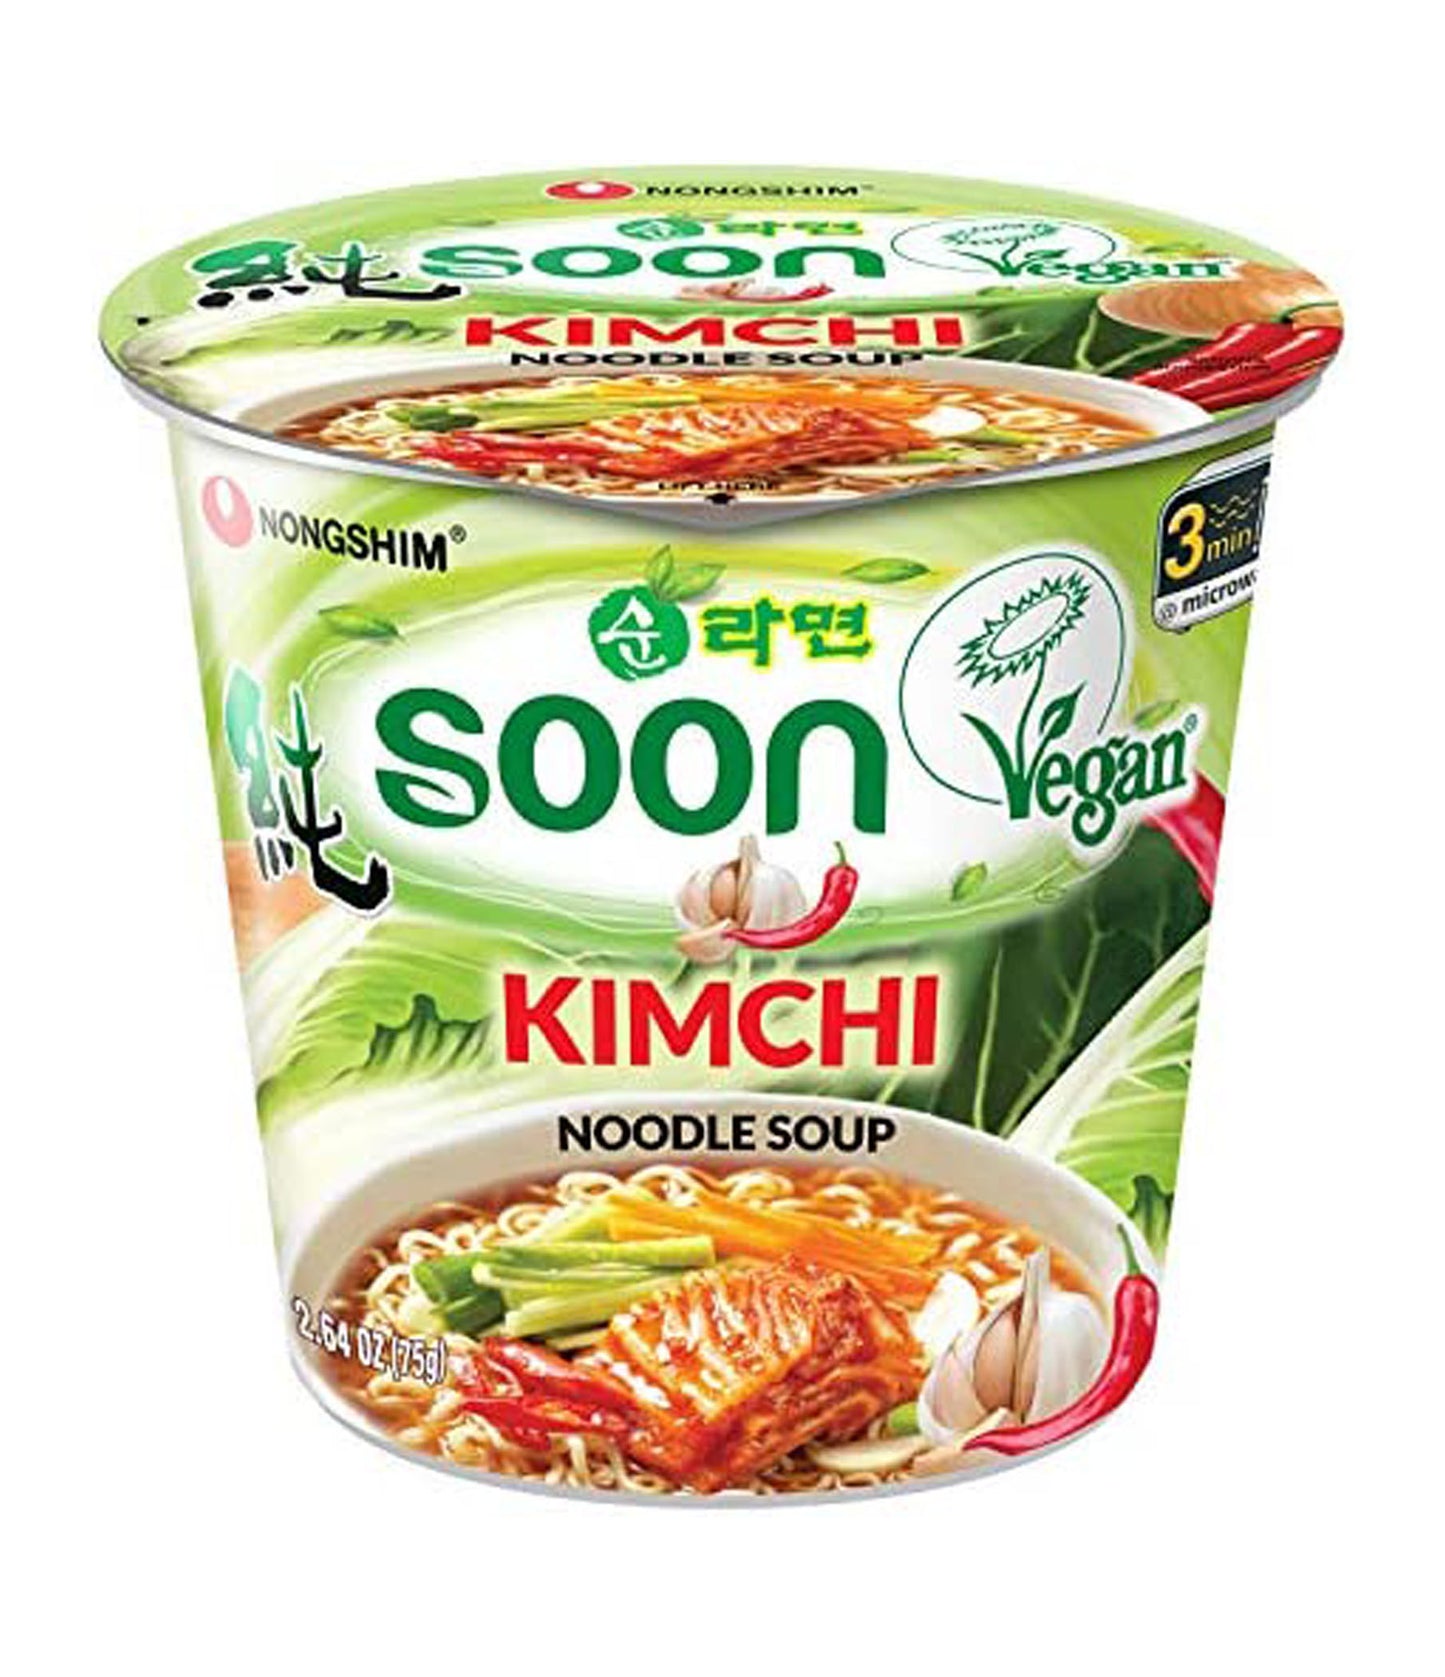 Nongshim – Soon Noodle Soup (Kimchi) 75g